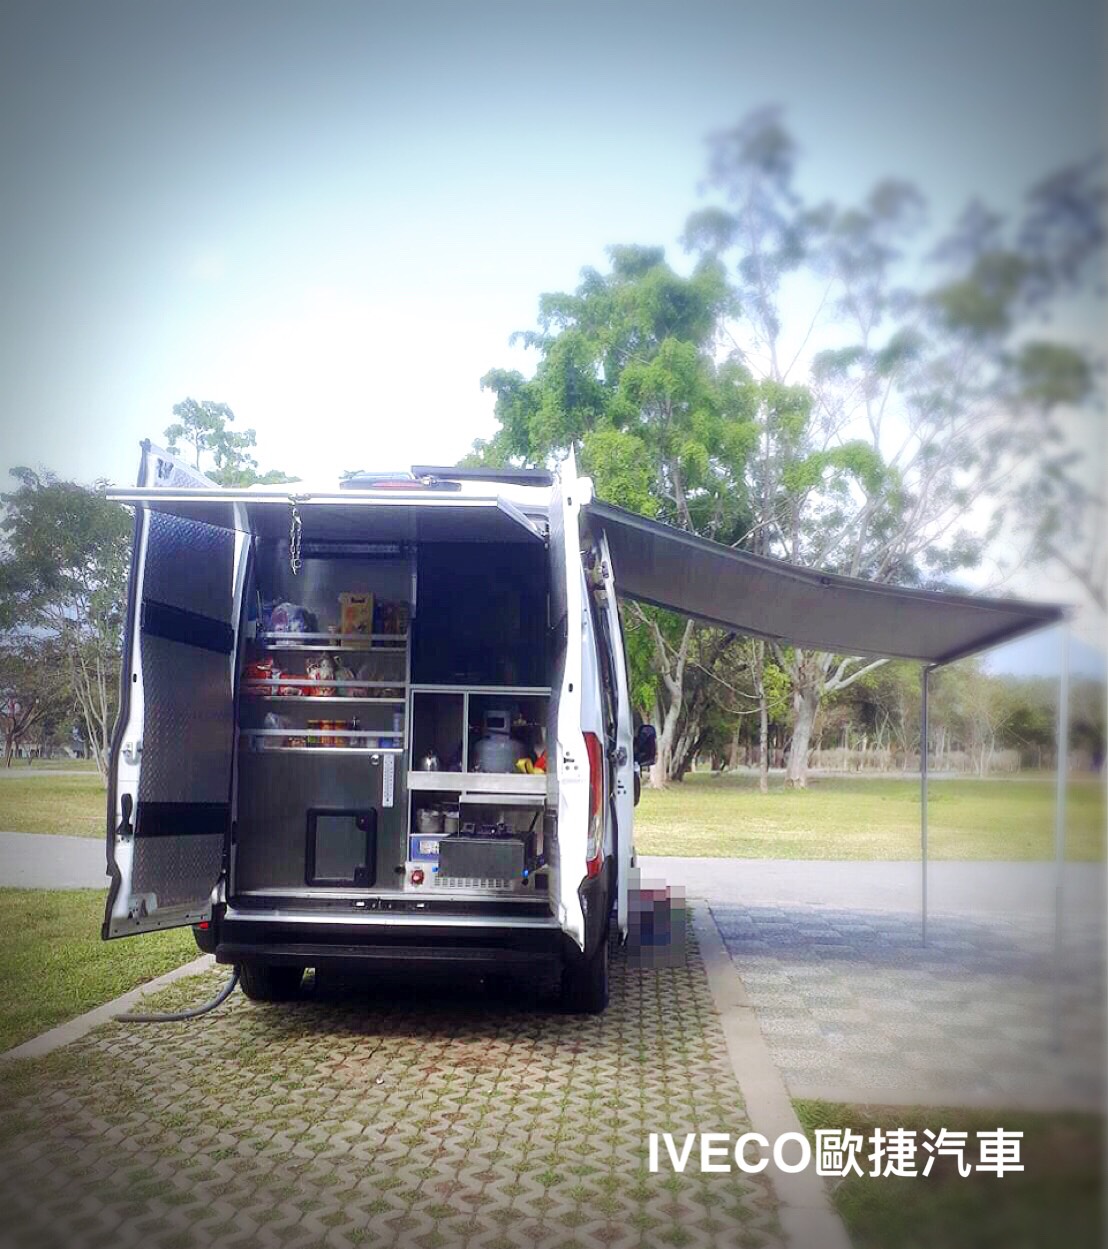 《團圓歡慶小過年》 IVECO自走式露營車說走就走性能高